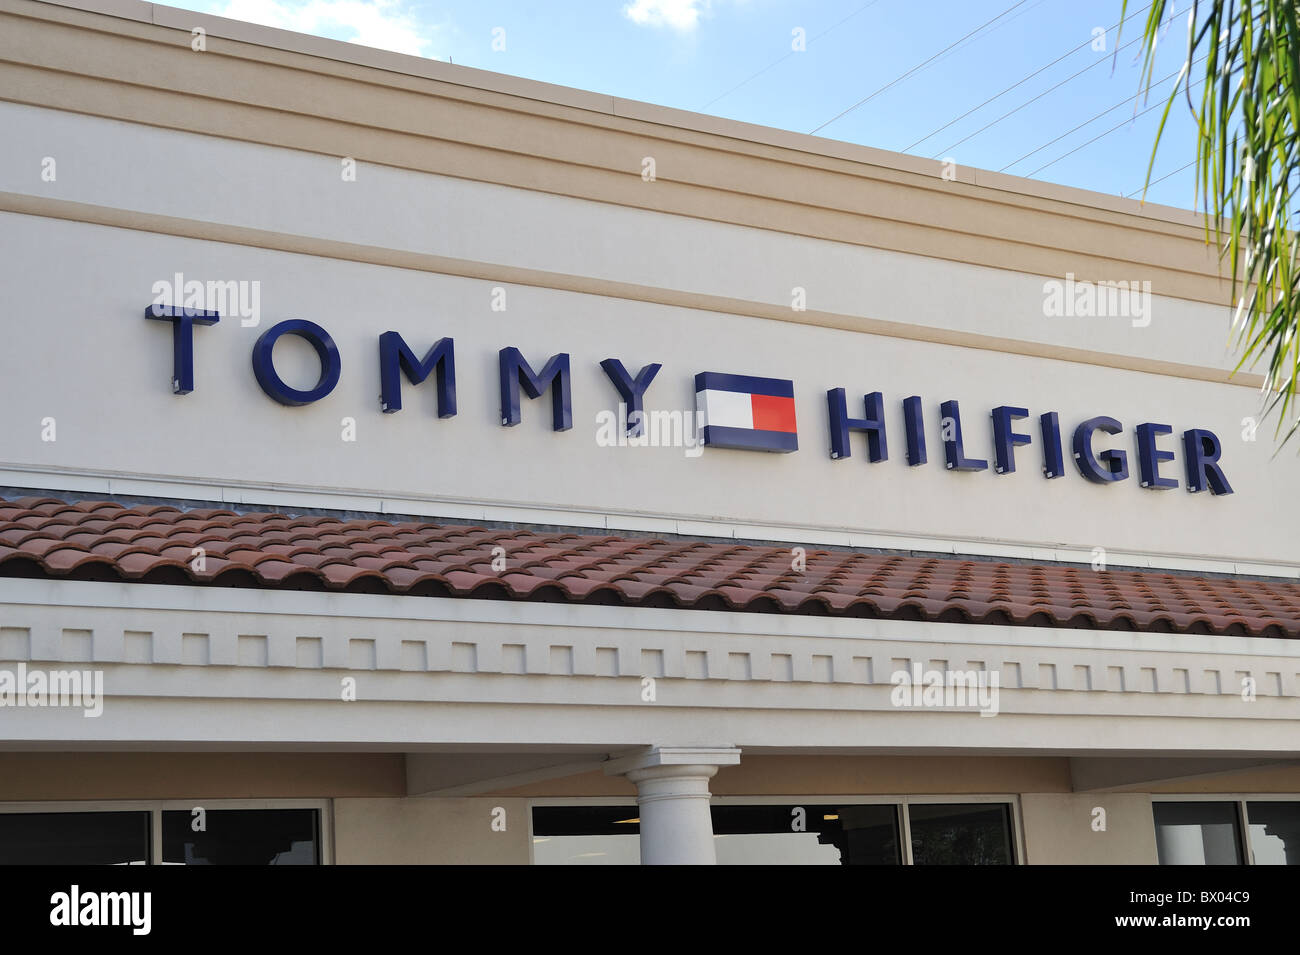 Tommy Hilfiger shop sign Stock Photo - Alamy